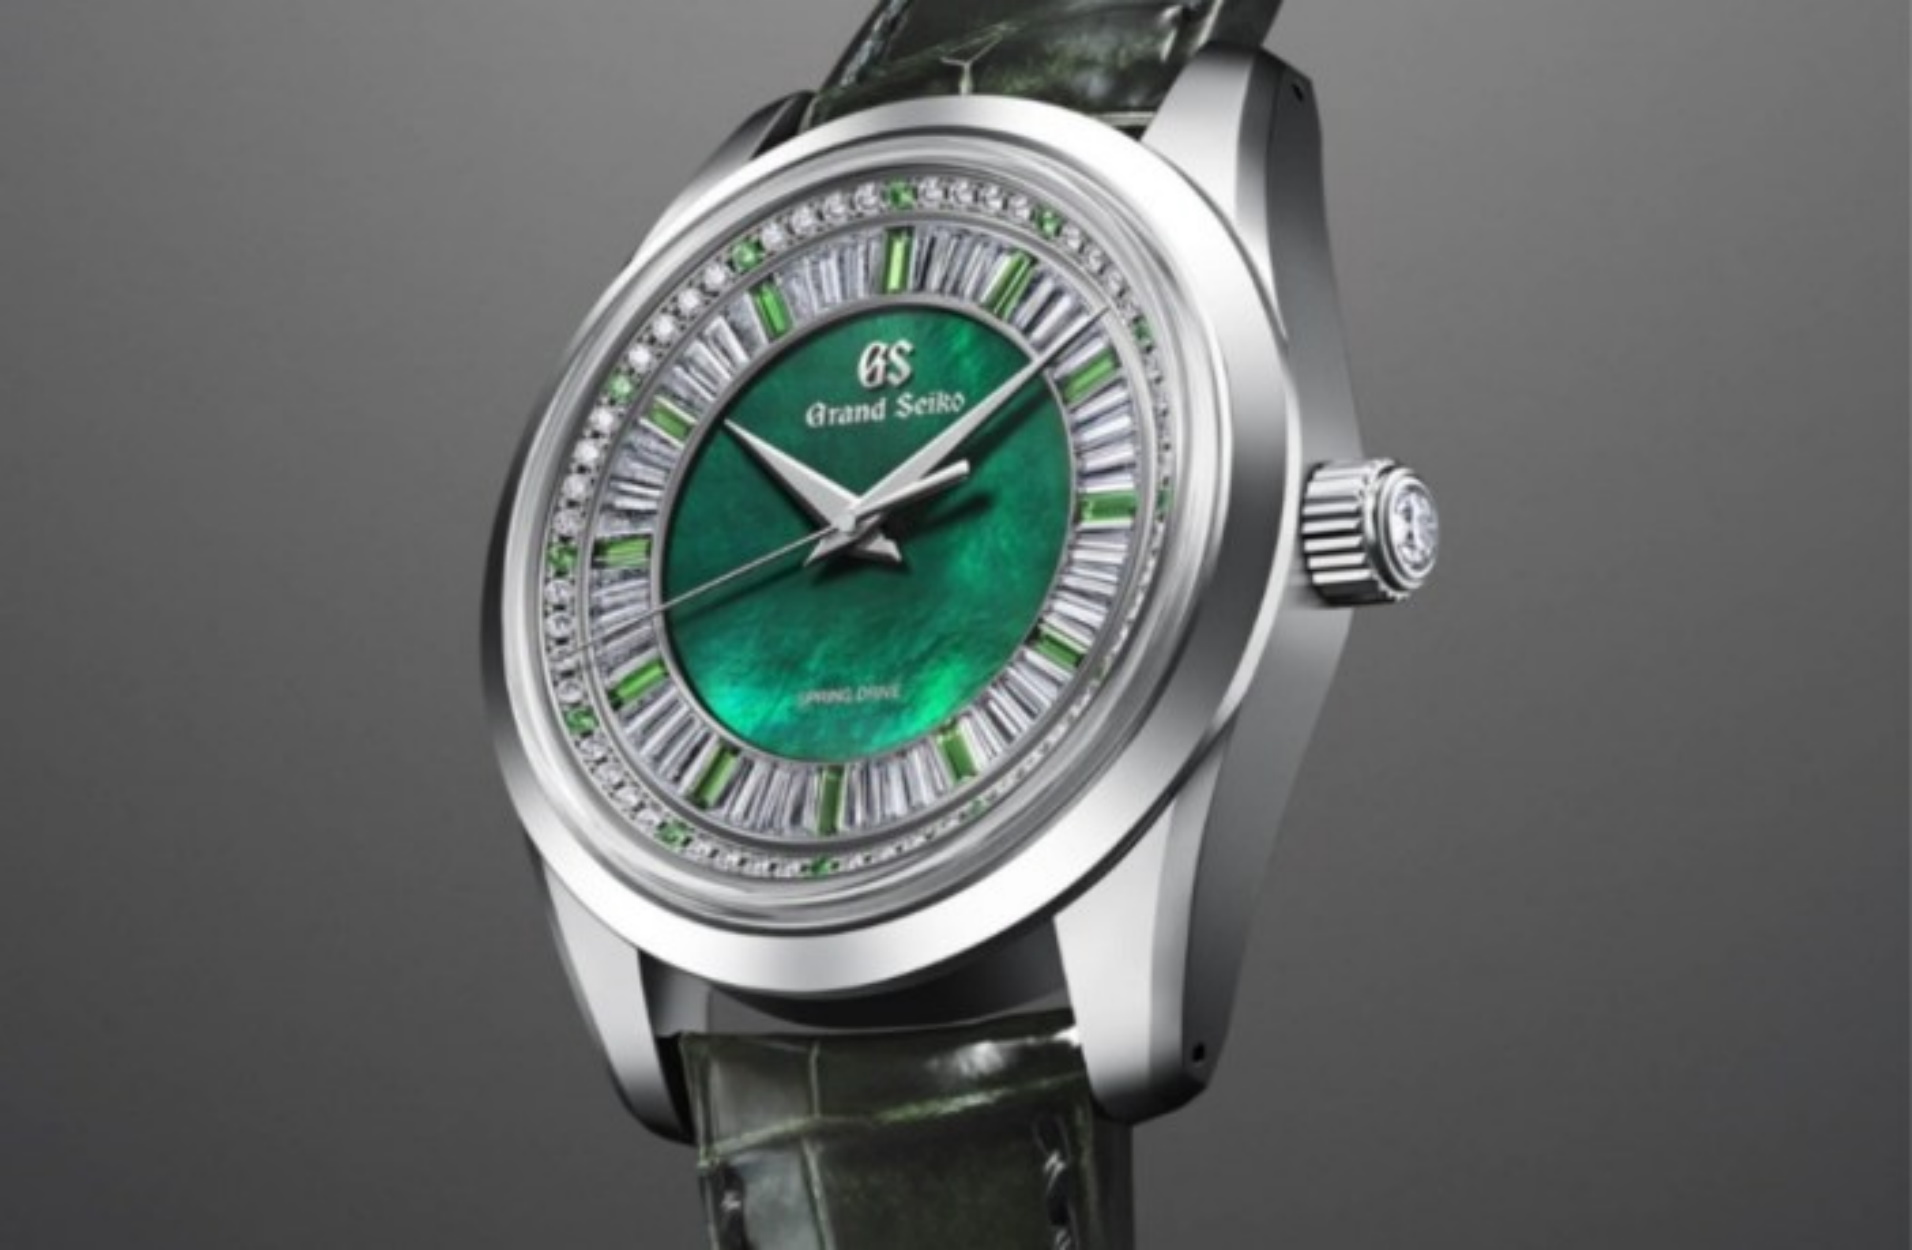 Το νέο ρολόι της Grand Seiko διαθέτει ένα καντράν που δεν θα αφήσει κανέναν ασυγκίνητο